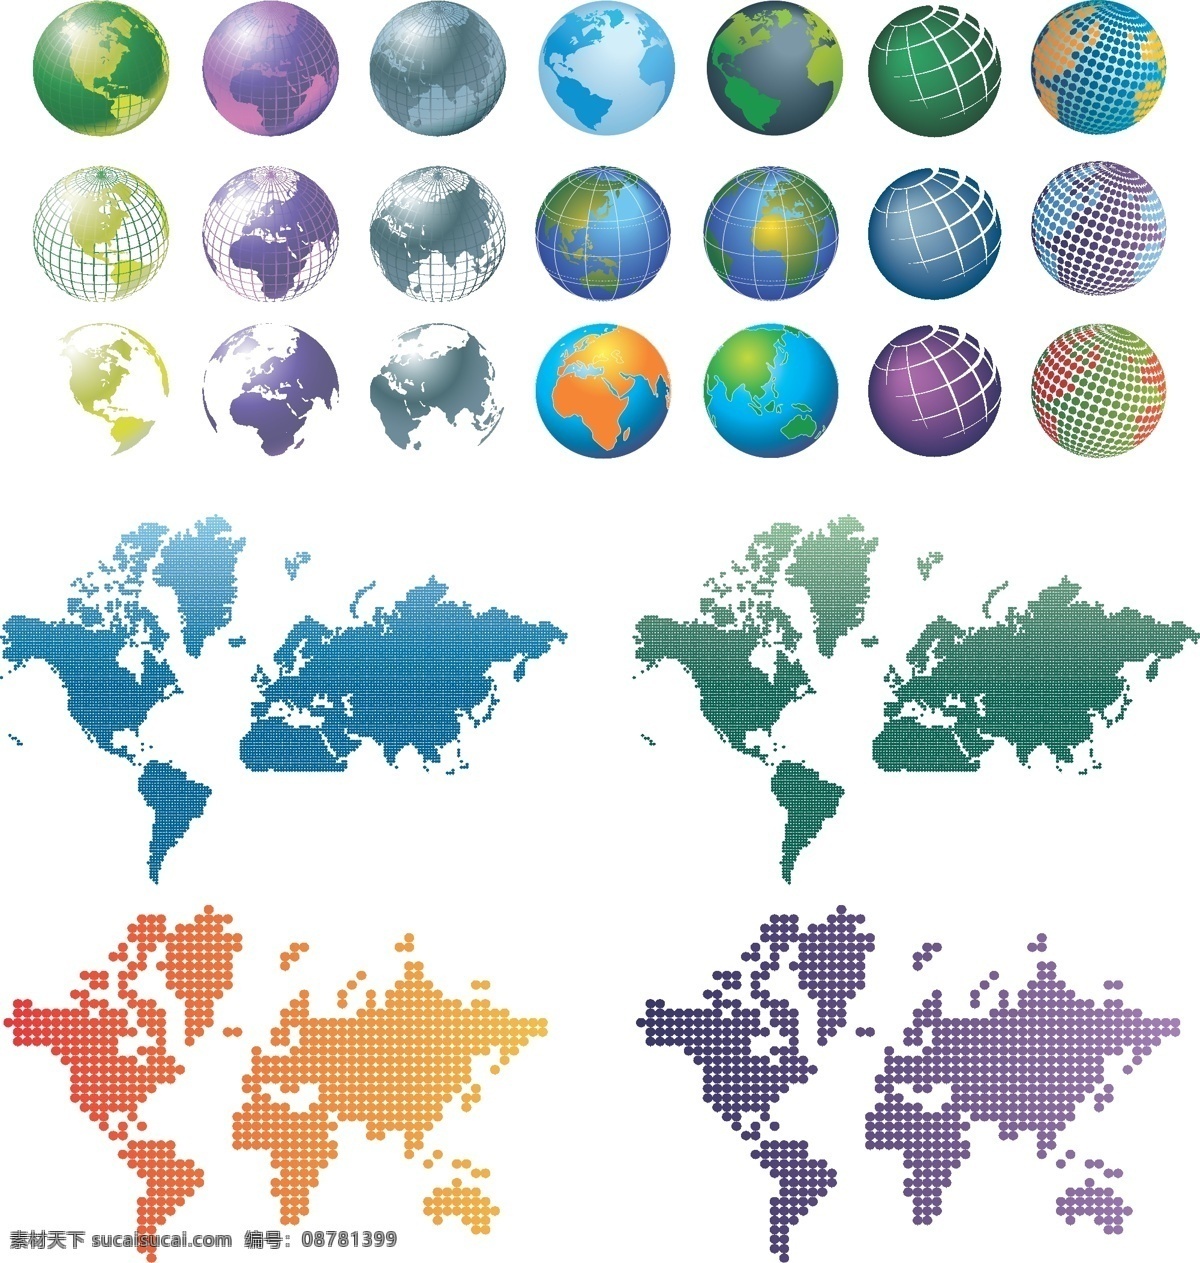 立体 蓝色 地球 矢量 水晶 环球 世界 科技 质感 地球仪 五大洲 亚洲 欧洲 非洲 美洲 大洋州 矢量素材